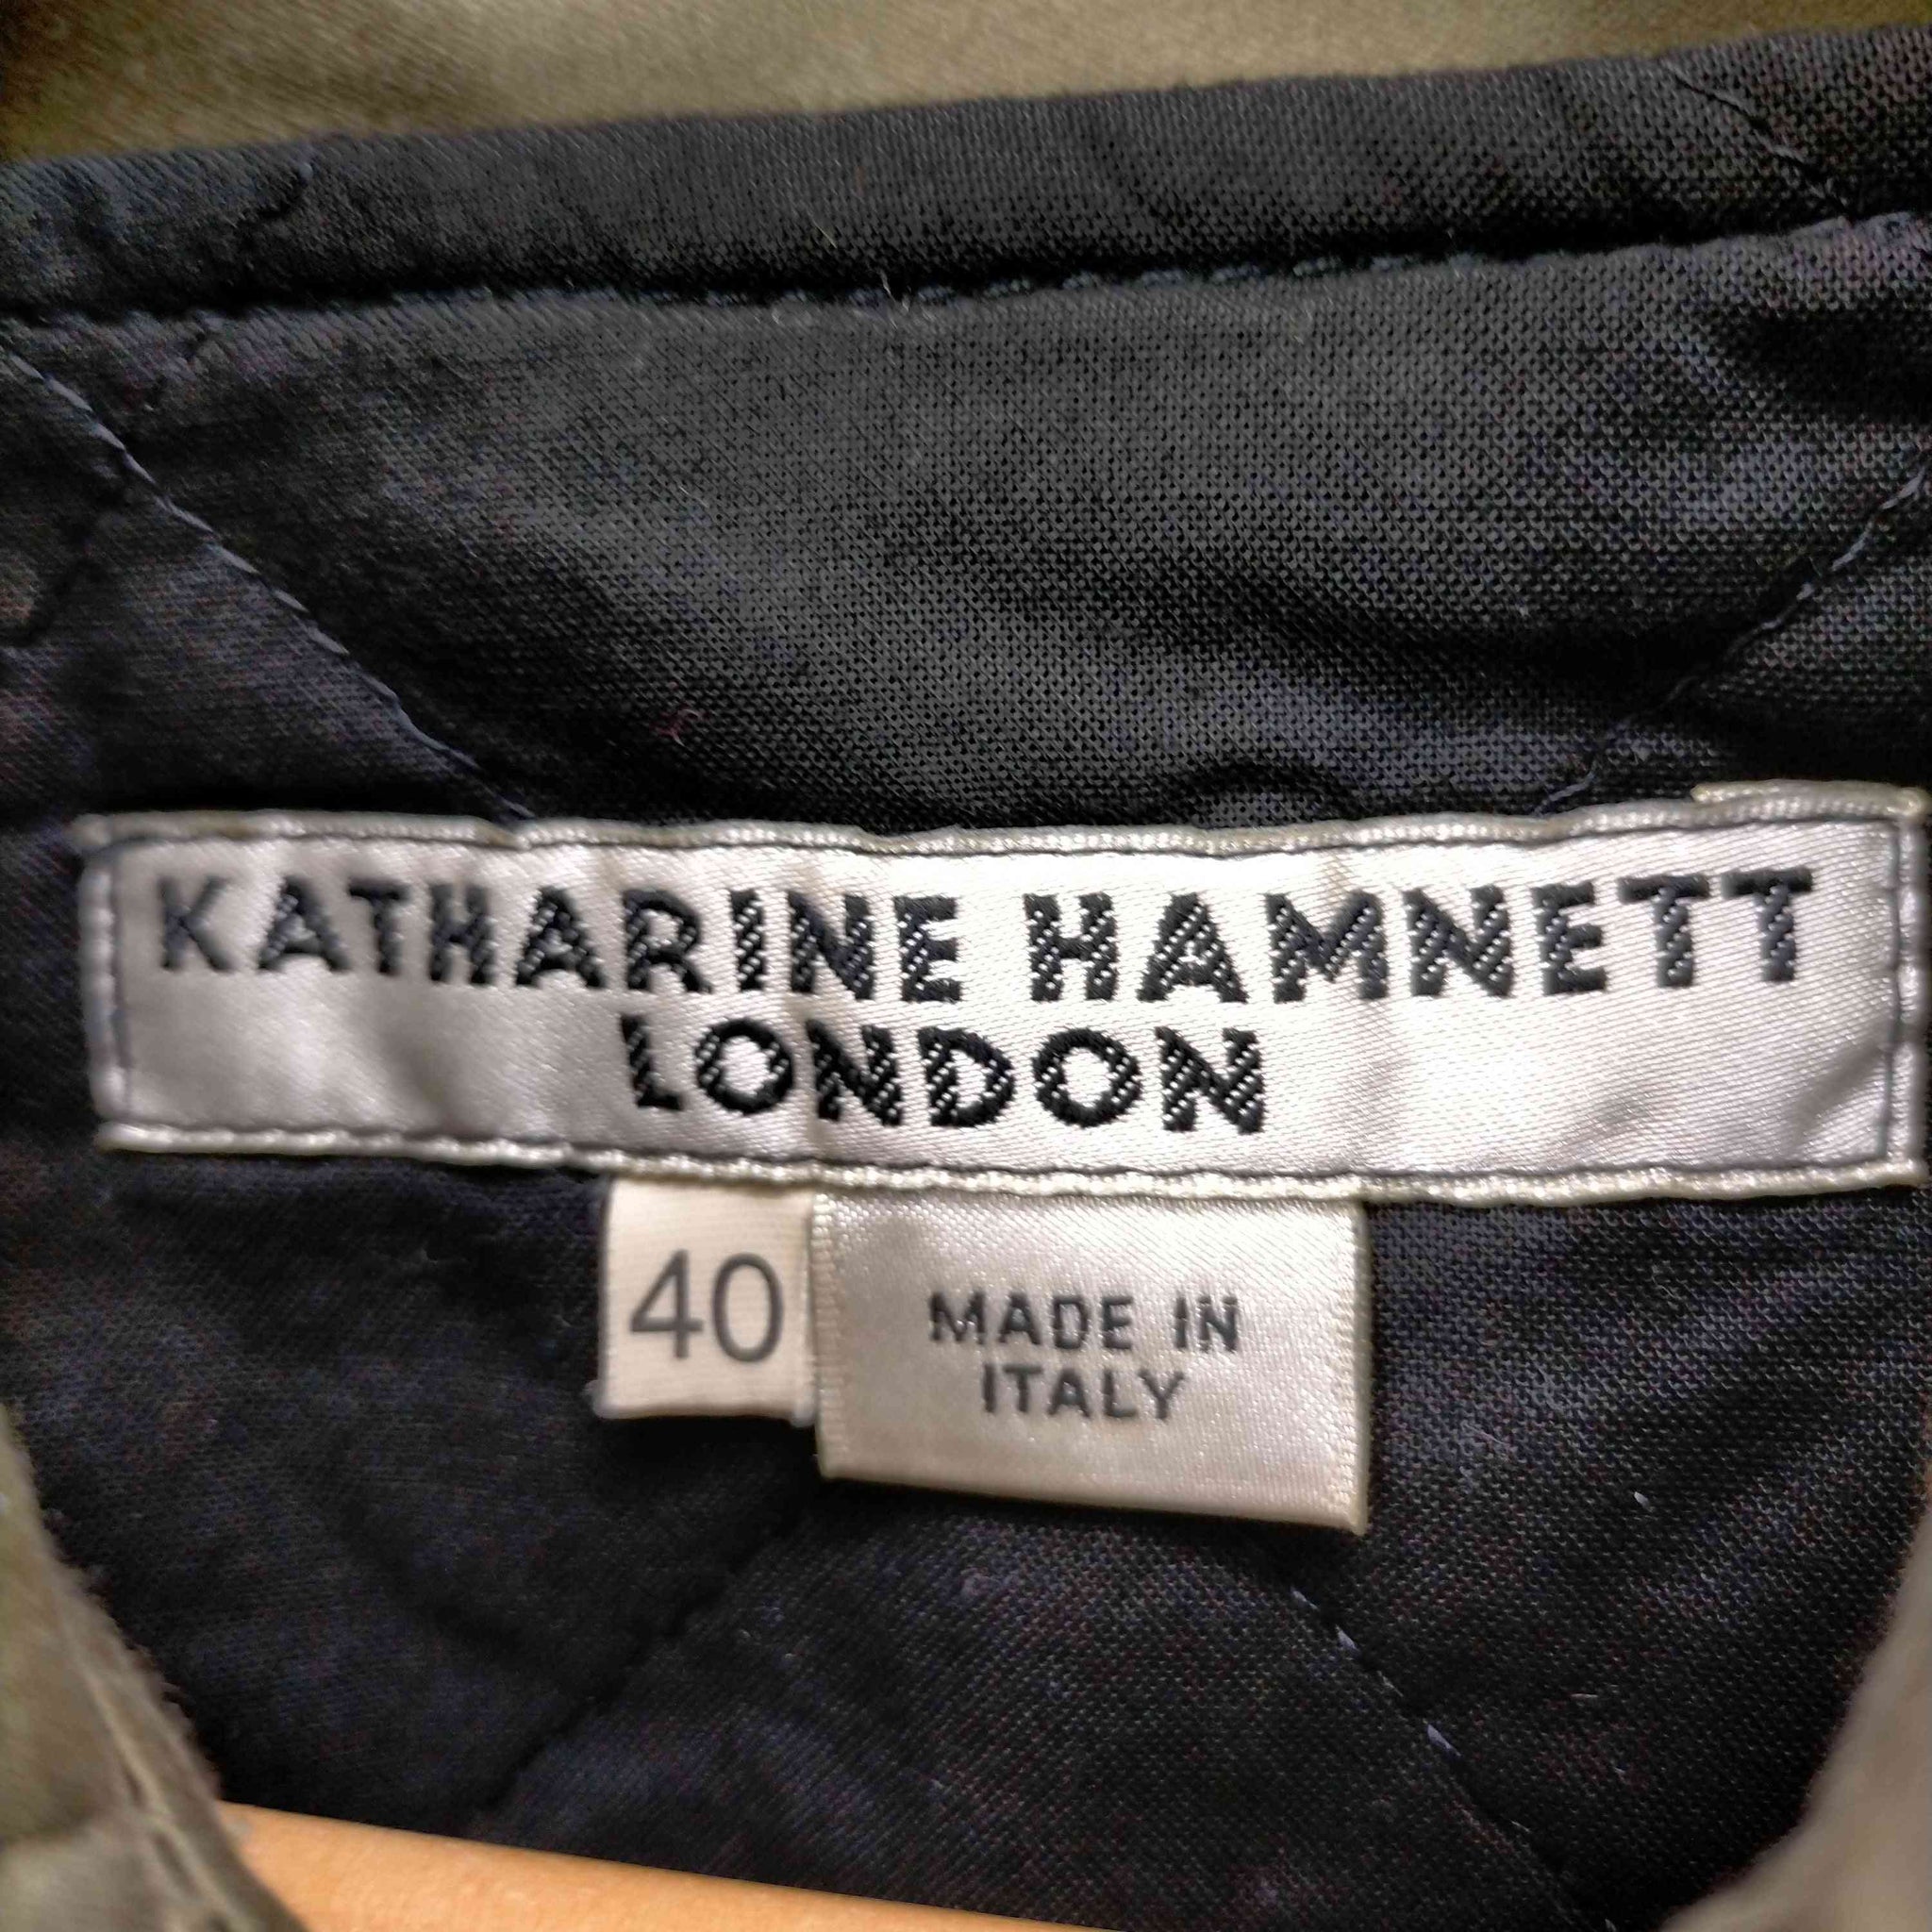 KATHARINE HAMNETT LONDON(キャサリンハムネットロンドン)MADE IN ITALY ライナー付きジップブルゾンジャケット